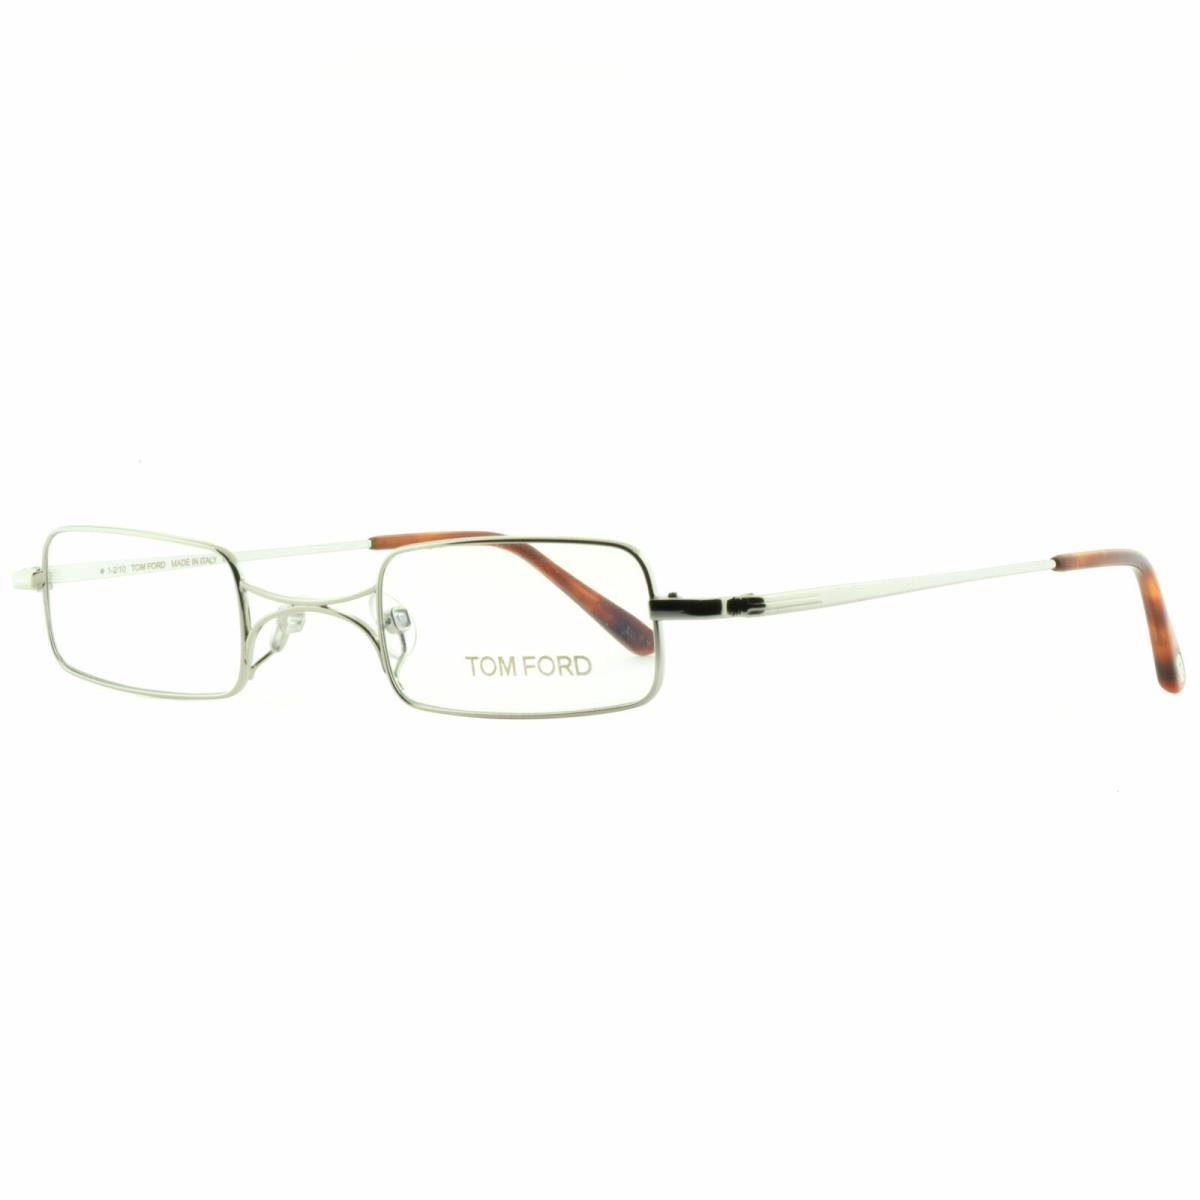 Tom Ford FT5170 018 Silver Rectangular Optical Frames Eyeglasses